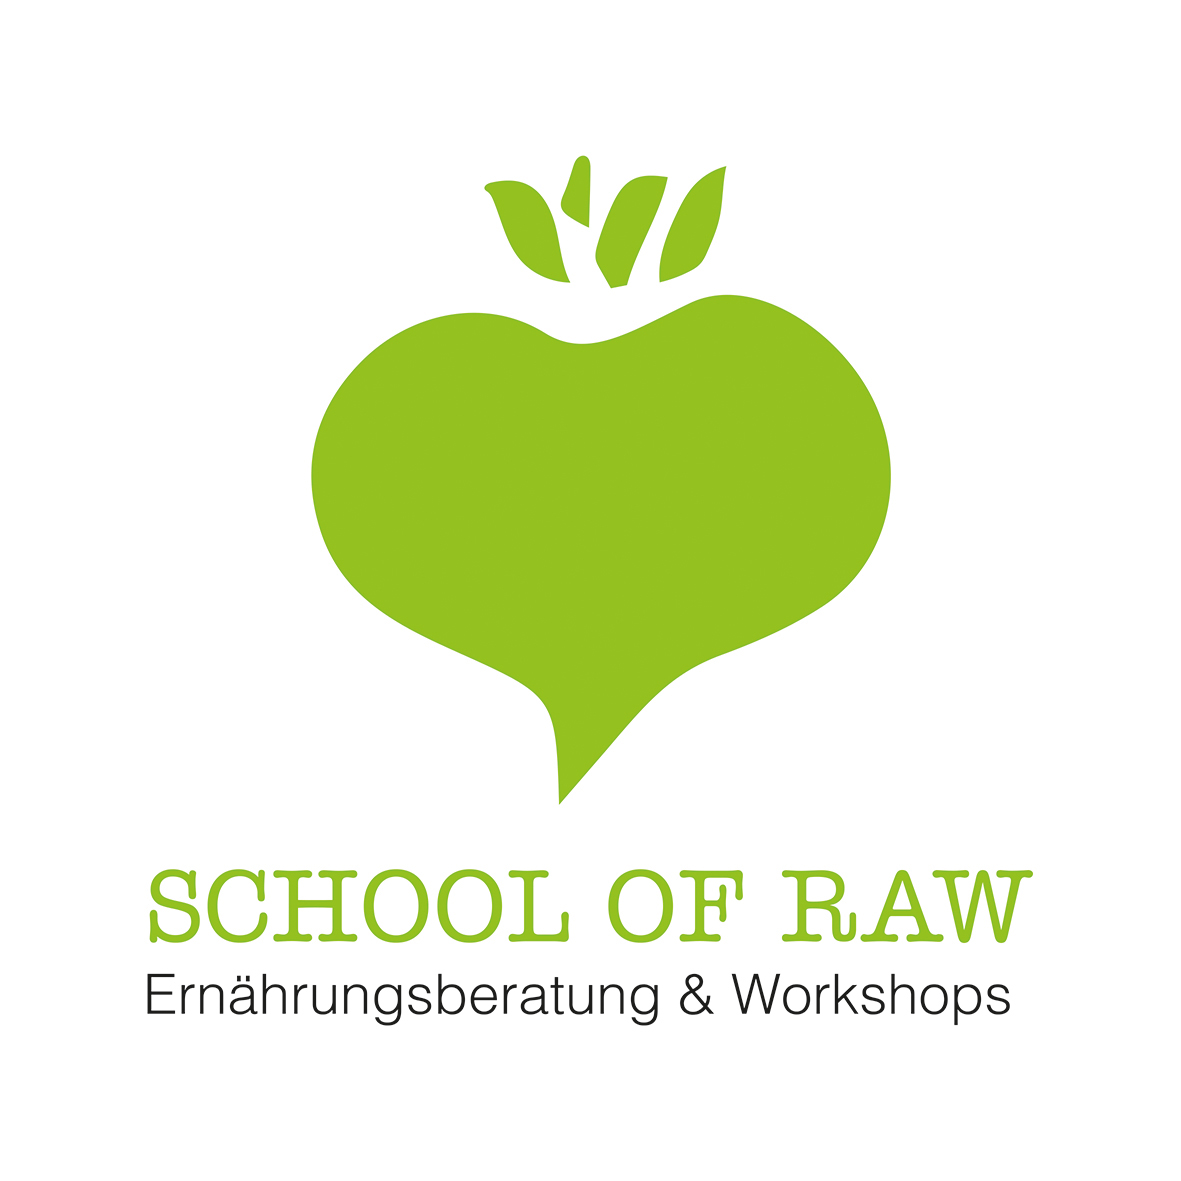 Eröffnung der School Of Raw - erste Workshops stehen fest! 25